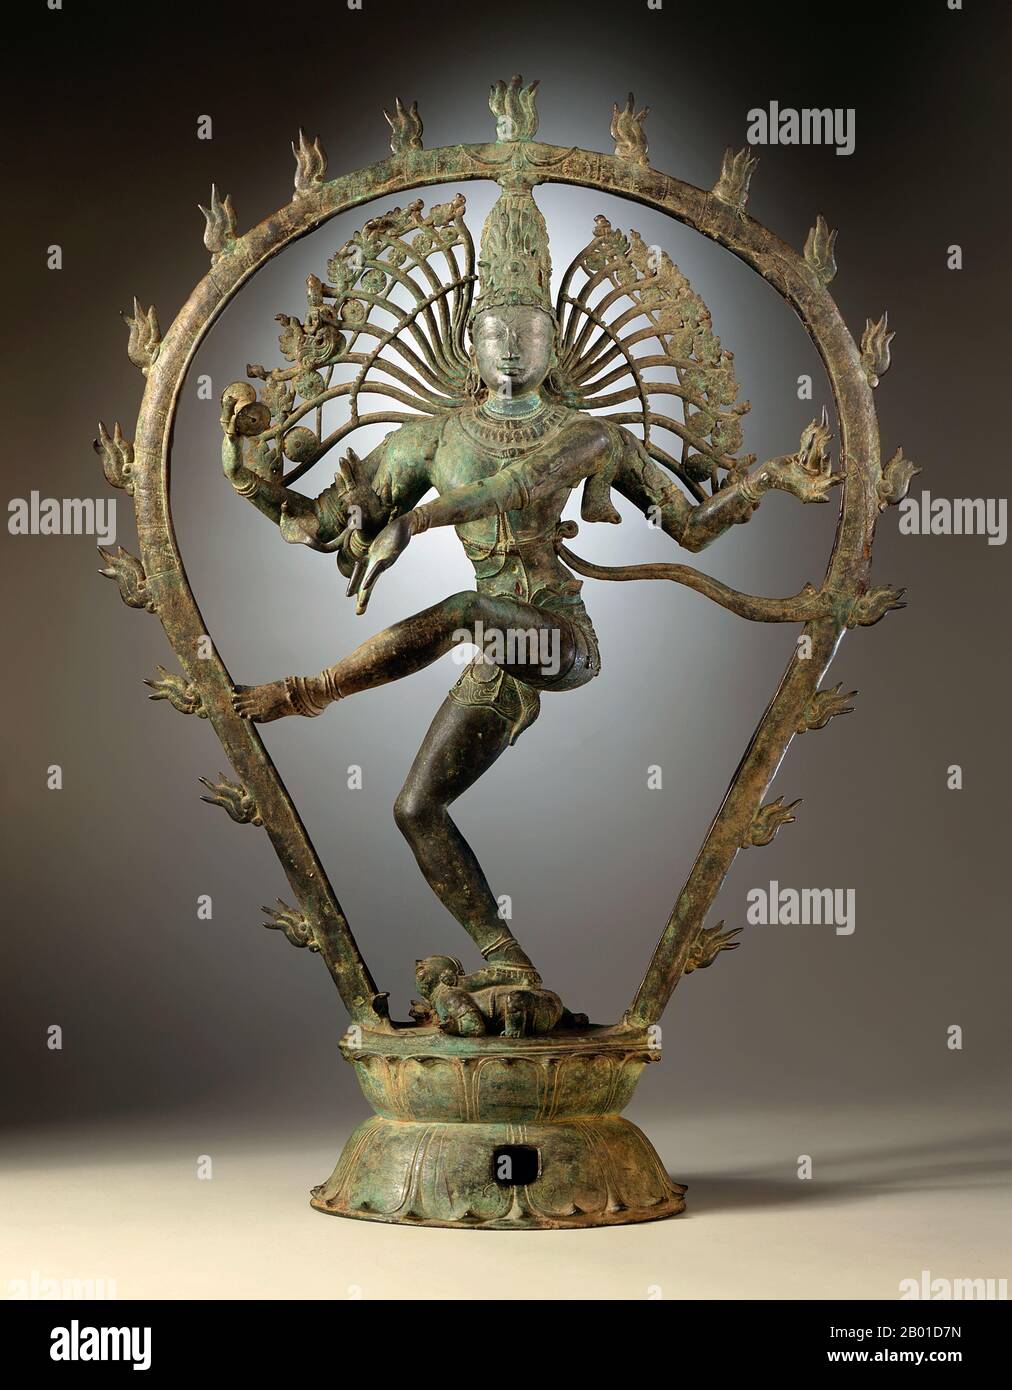 Inde: Shiva Nataraja ou 'Dancing Shiva'. Statuette en alliage de cuivre de Tamil Nadu, Chola Dynasty, c. 950-1000 CE. Nataraja ou Nataraj ('le Seigneur (ou Roi) de la danse'; Tamil: Kathan) est une représentation du dieu hindou Shiva comme danseur cosmique Koothan qui exécute sa danse divine pour détruire un univers fatigué et faire des préparatifs pour le dieu Brahma pour commencer le processus de création. Un concept tamoul, Shiva a d'abord été représenté comme Nataraja dans les célèbres bronzes Chola et sculptures de Chidambaram. Banque D'Images